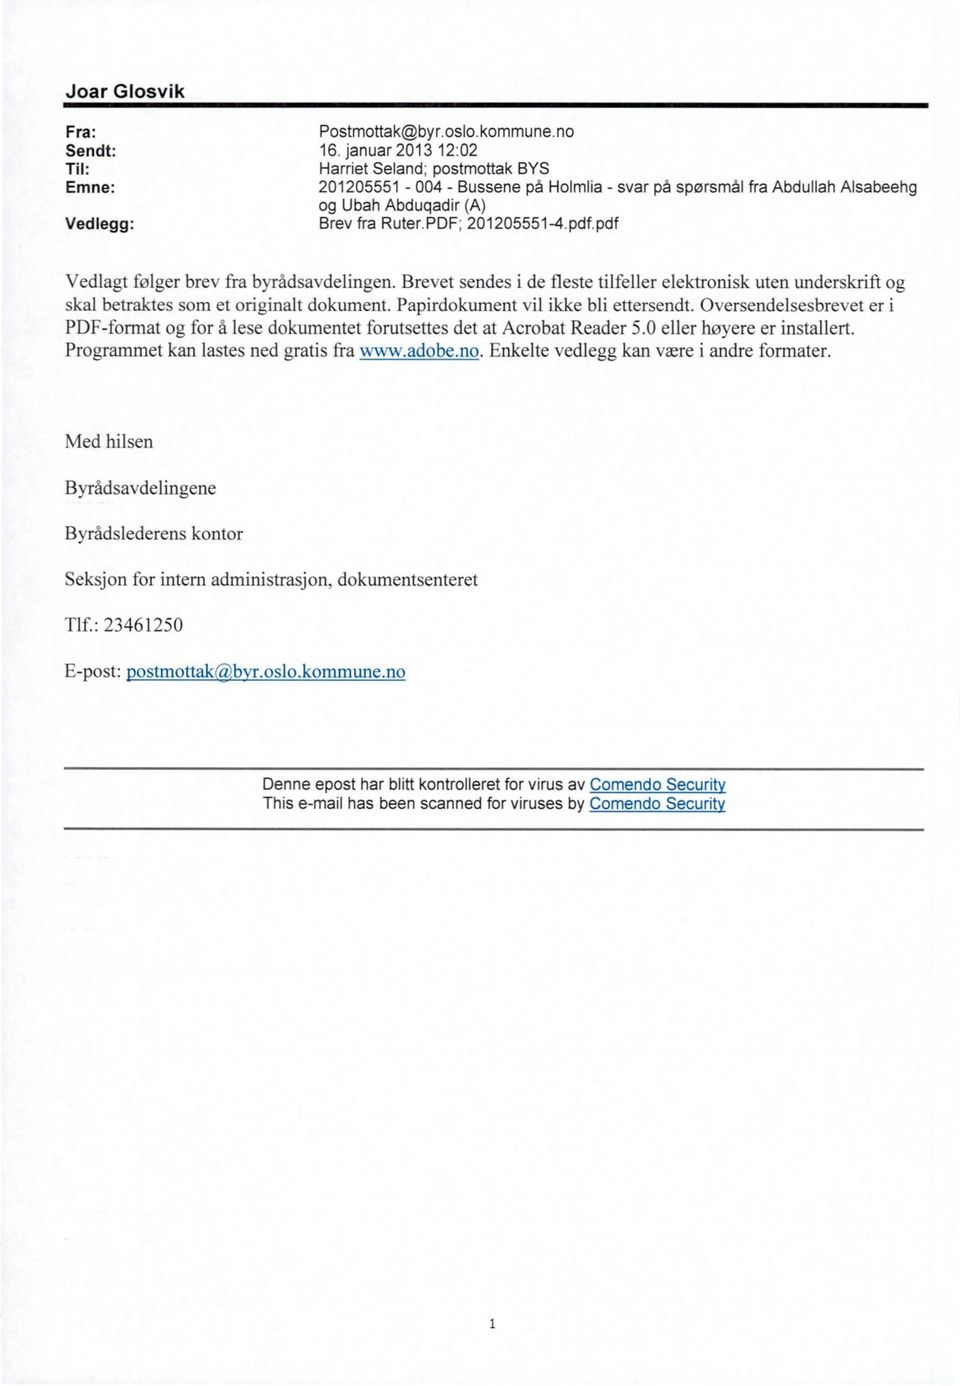 pdf.pdf Vedlagt følger brev fra byrådsavdelingen. Brevet sendes i de fleste tilfeller elektronisk uten underskrift og skal betraktes som et originalt dokument. Papirdokument vil ikke bli ettersendt.